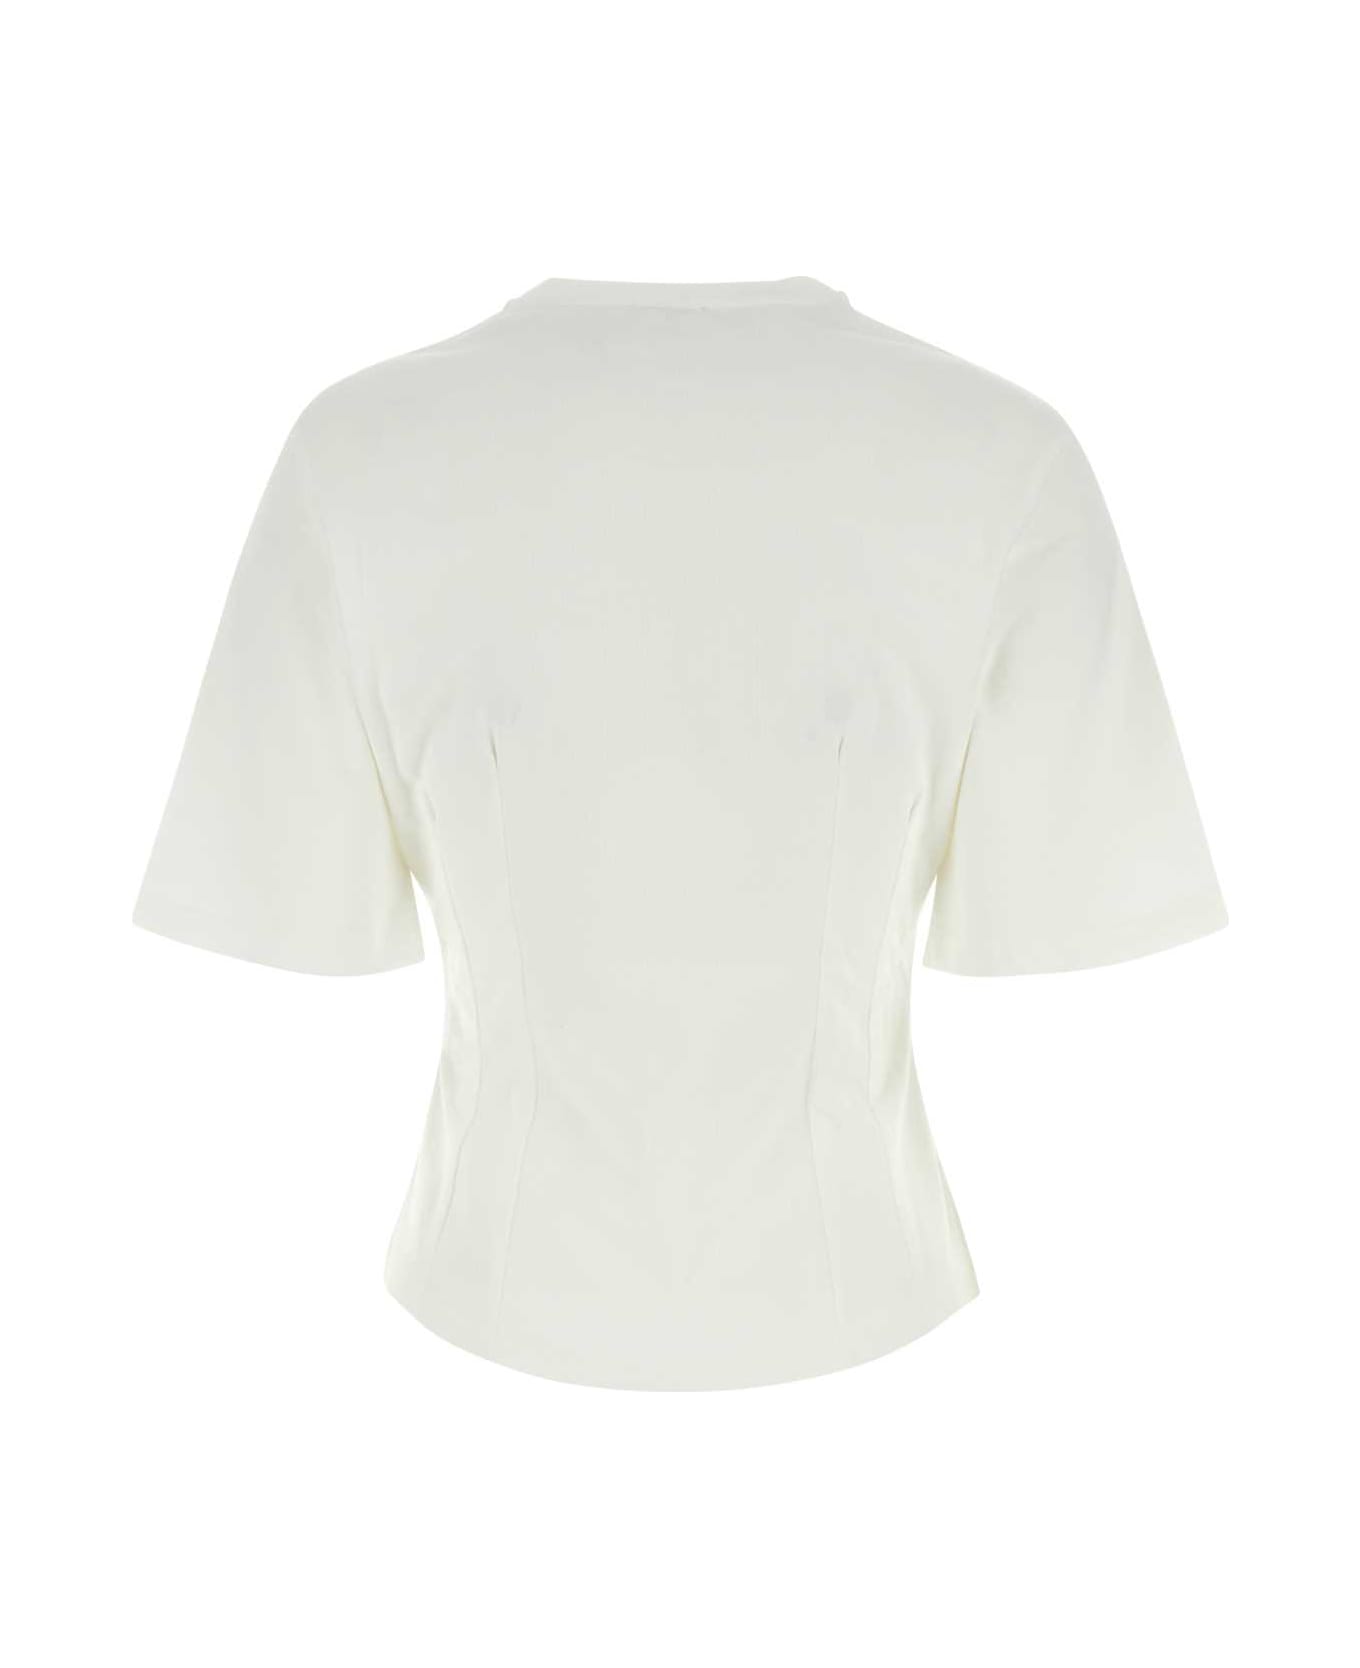 Etro White Cotton T-shirt - WHITE